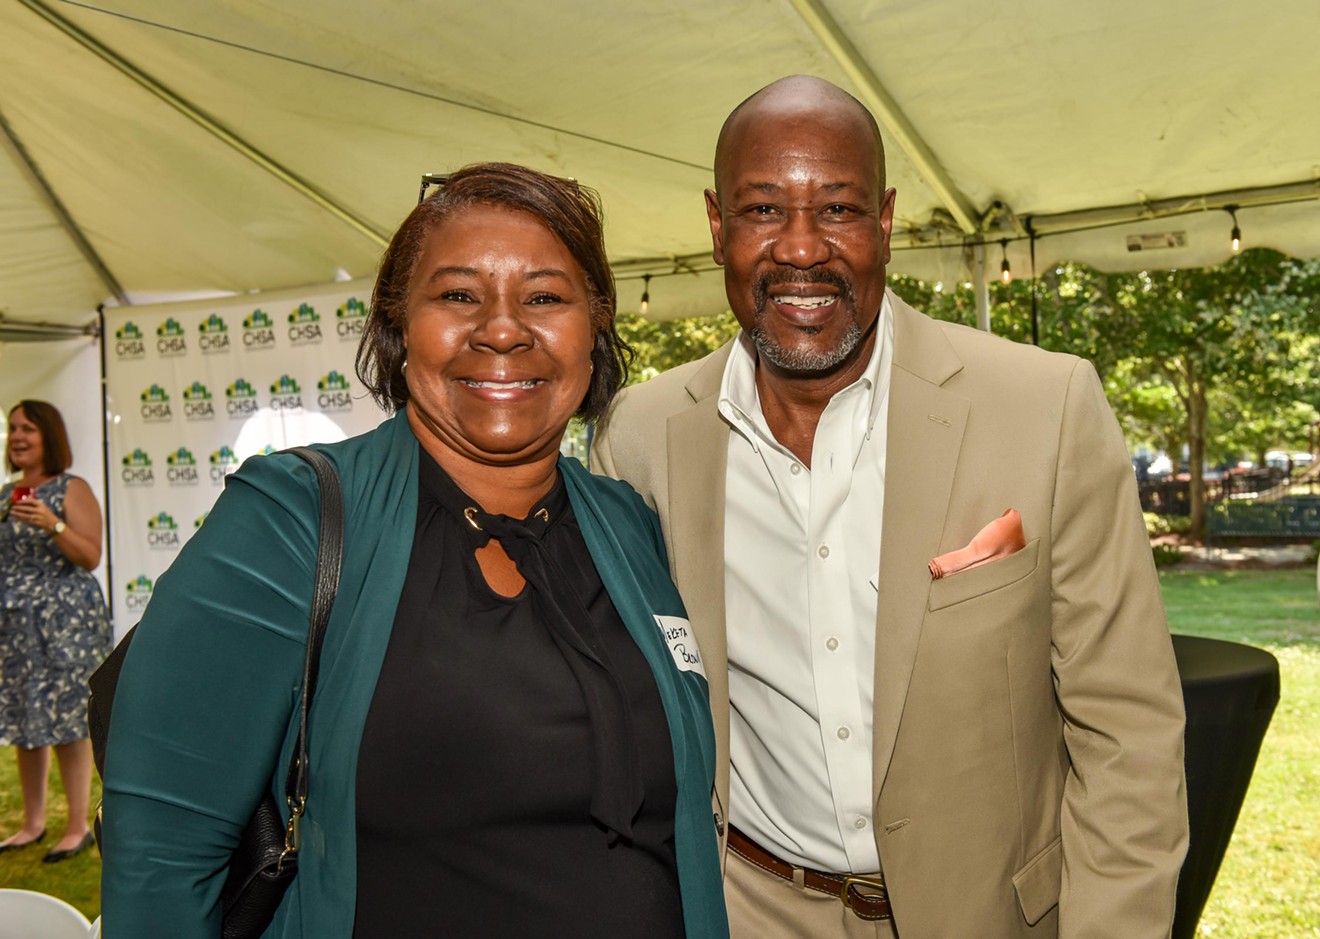 CHSA 35th Anniversary and Savannah Gardens Pinnacle Celebration